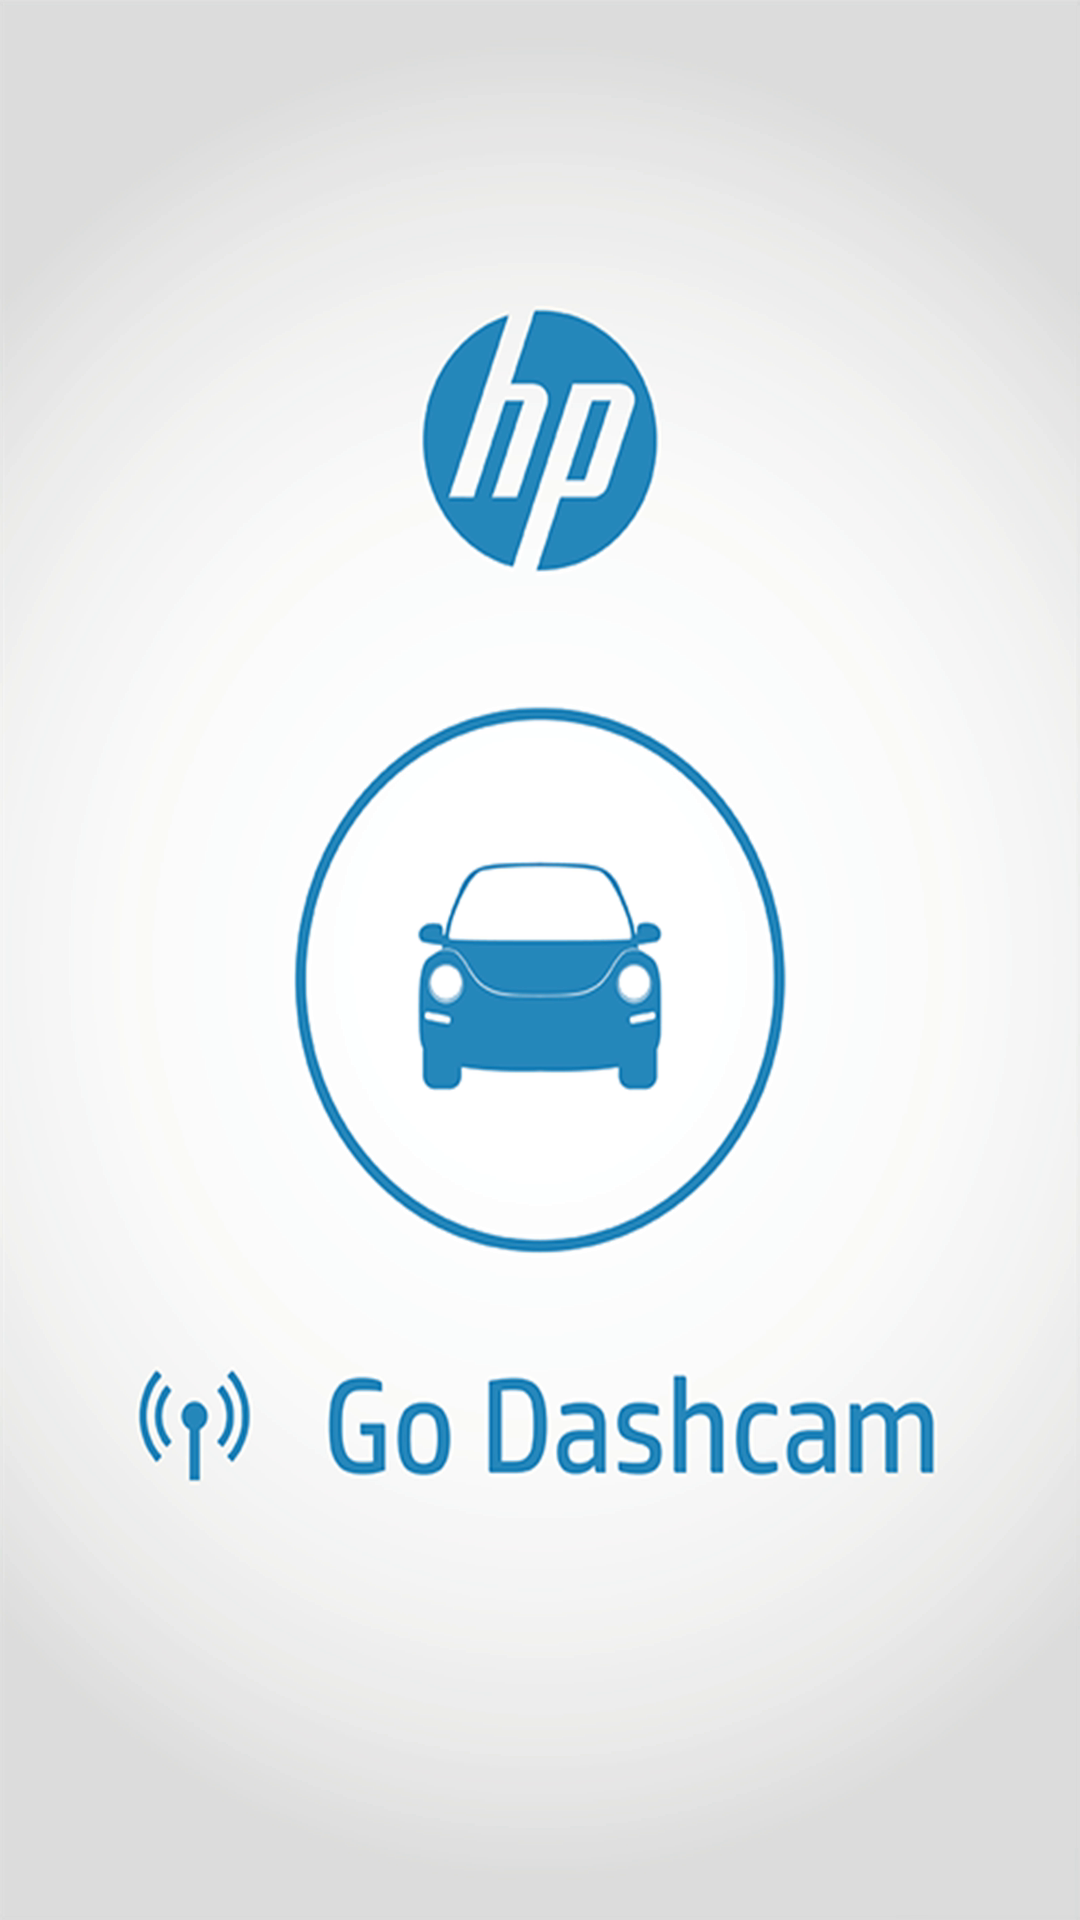 Go Dashcam app